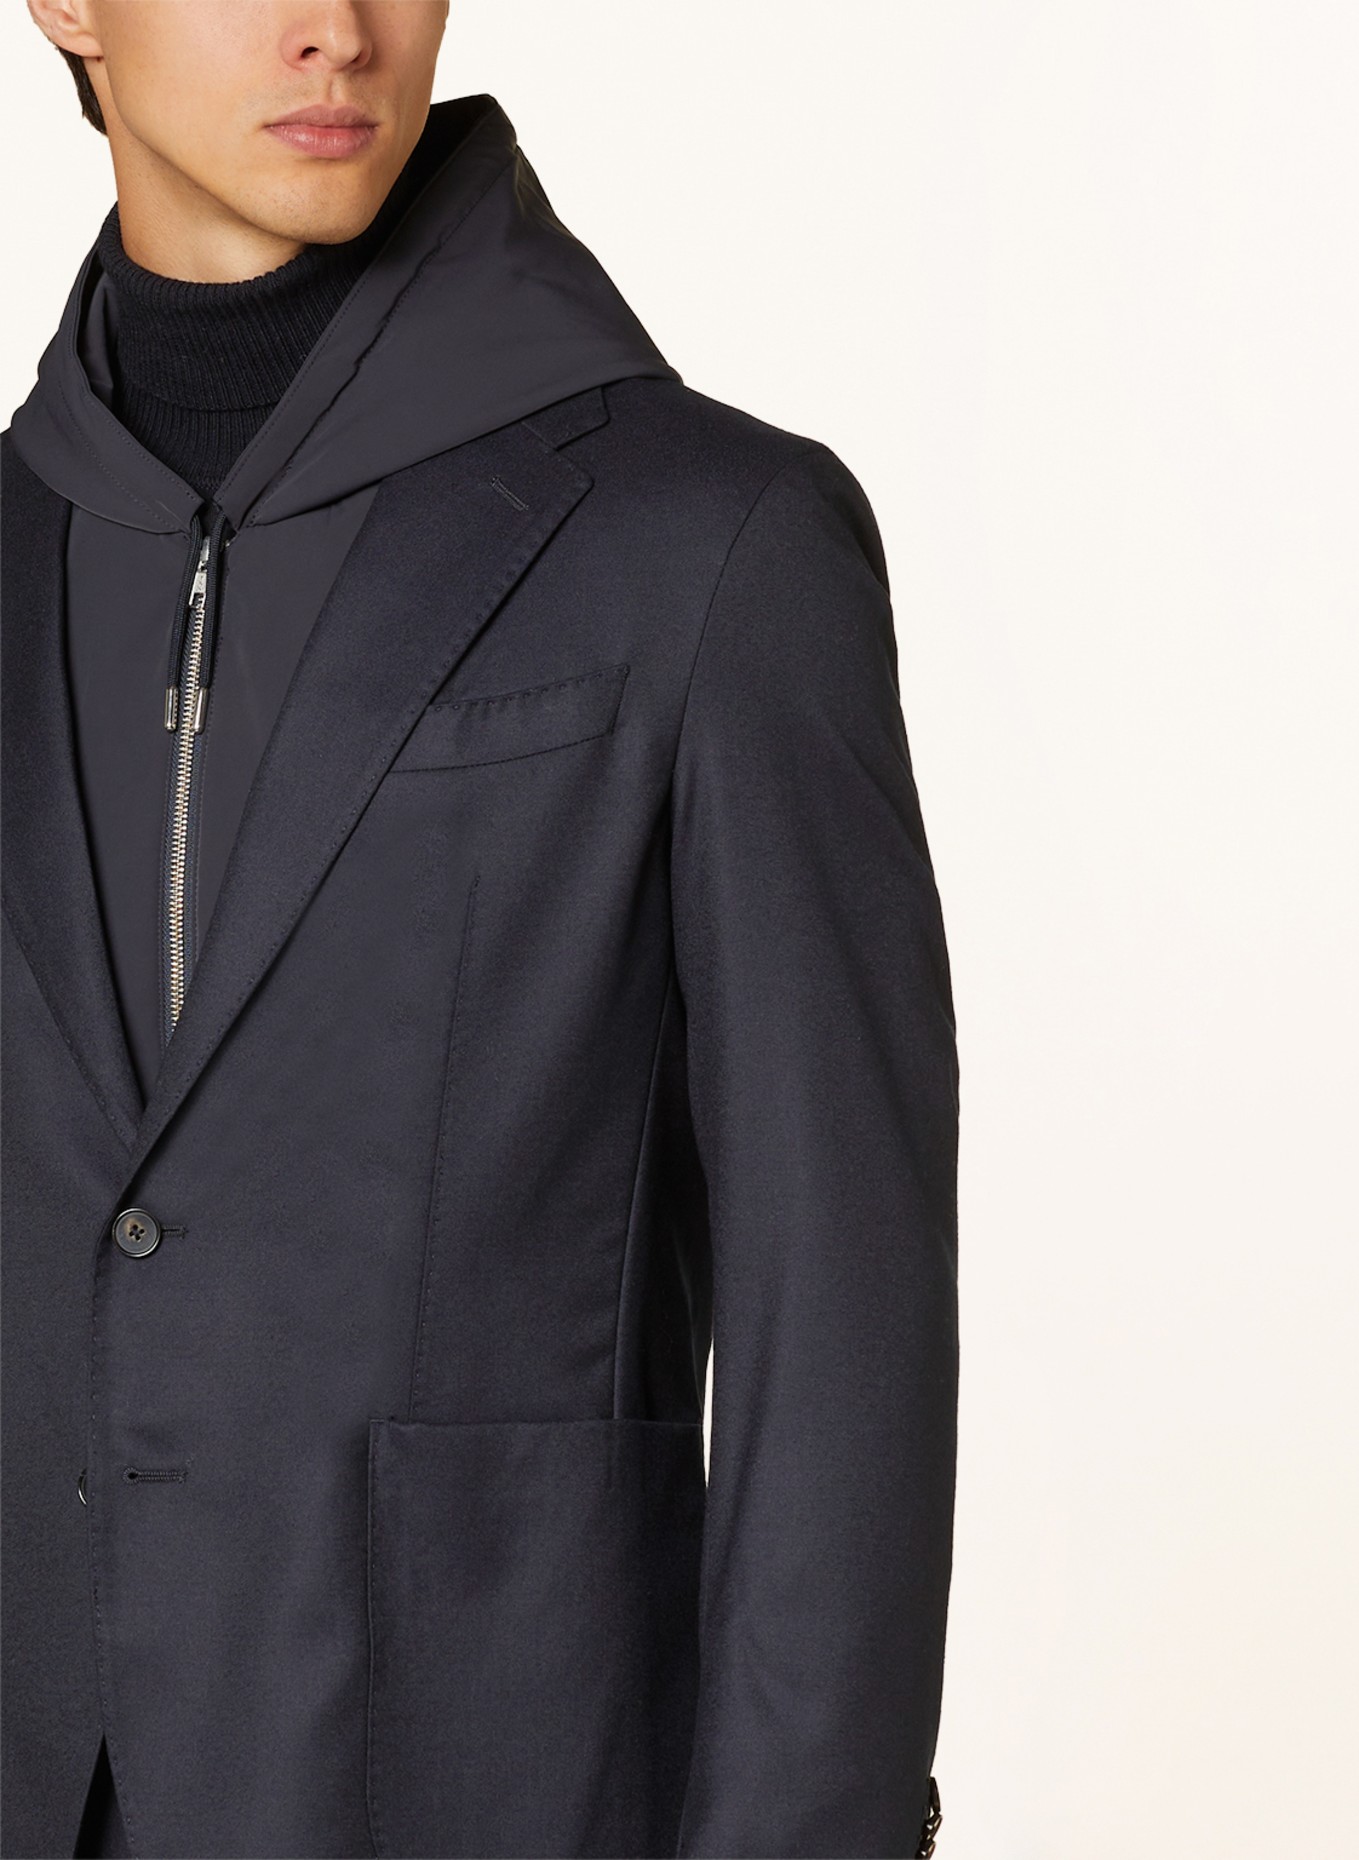 CHAS Suit jacket regular fit, Color: DARK BLUE (Image 7)